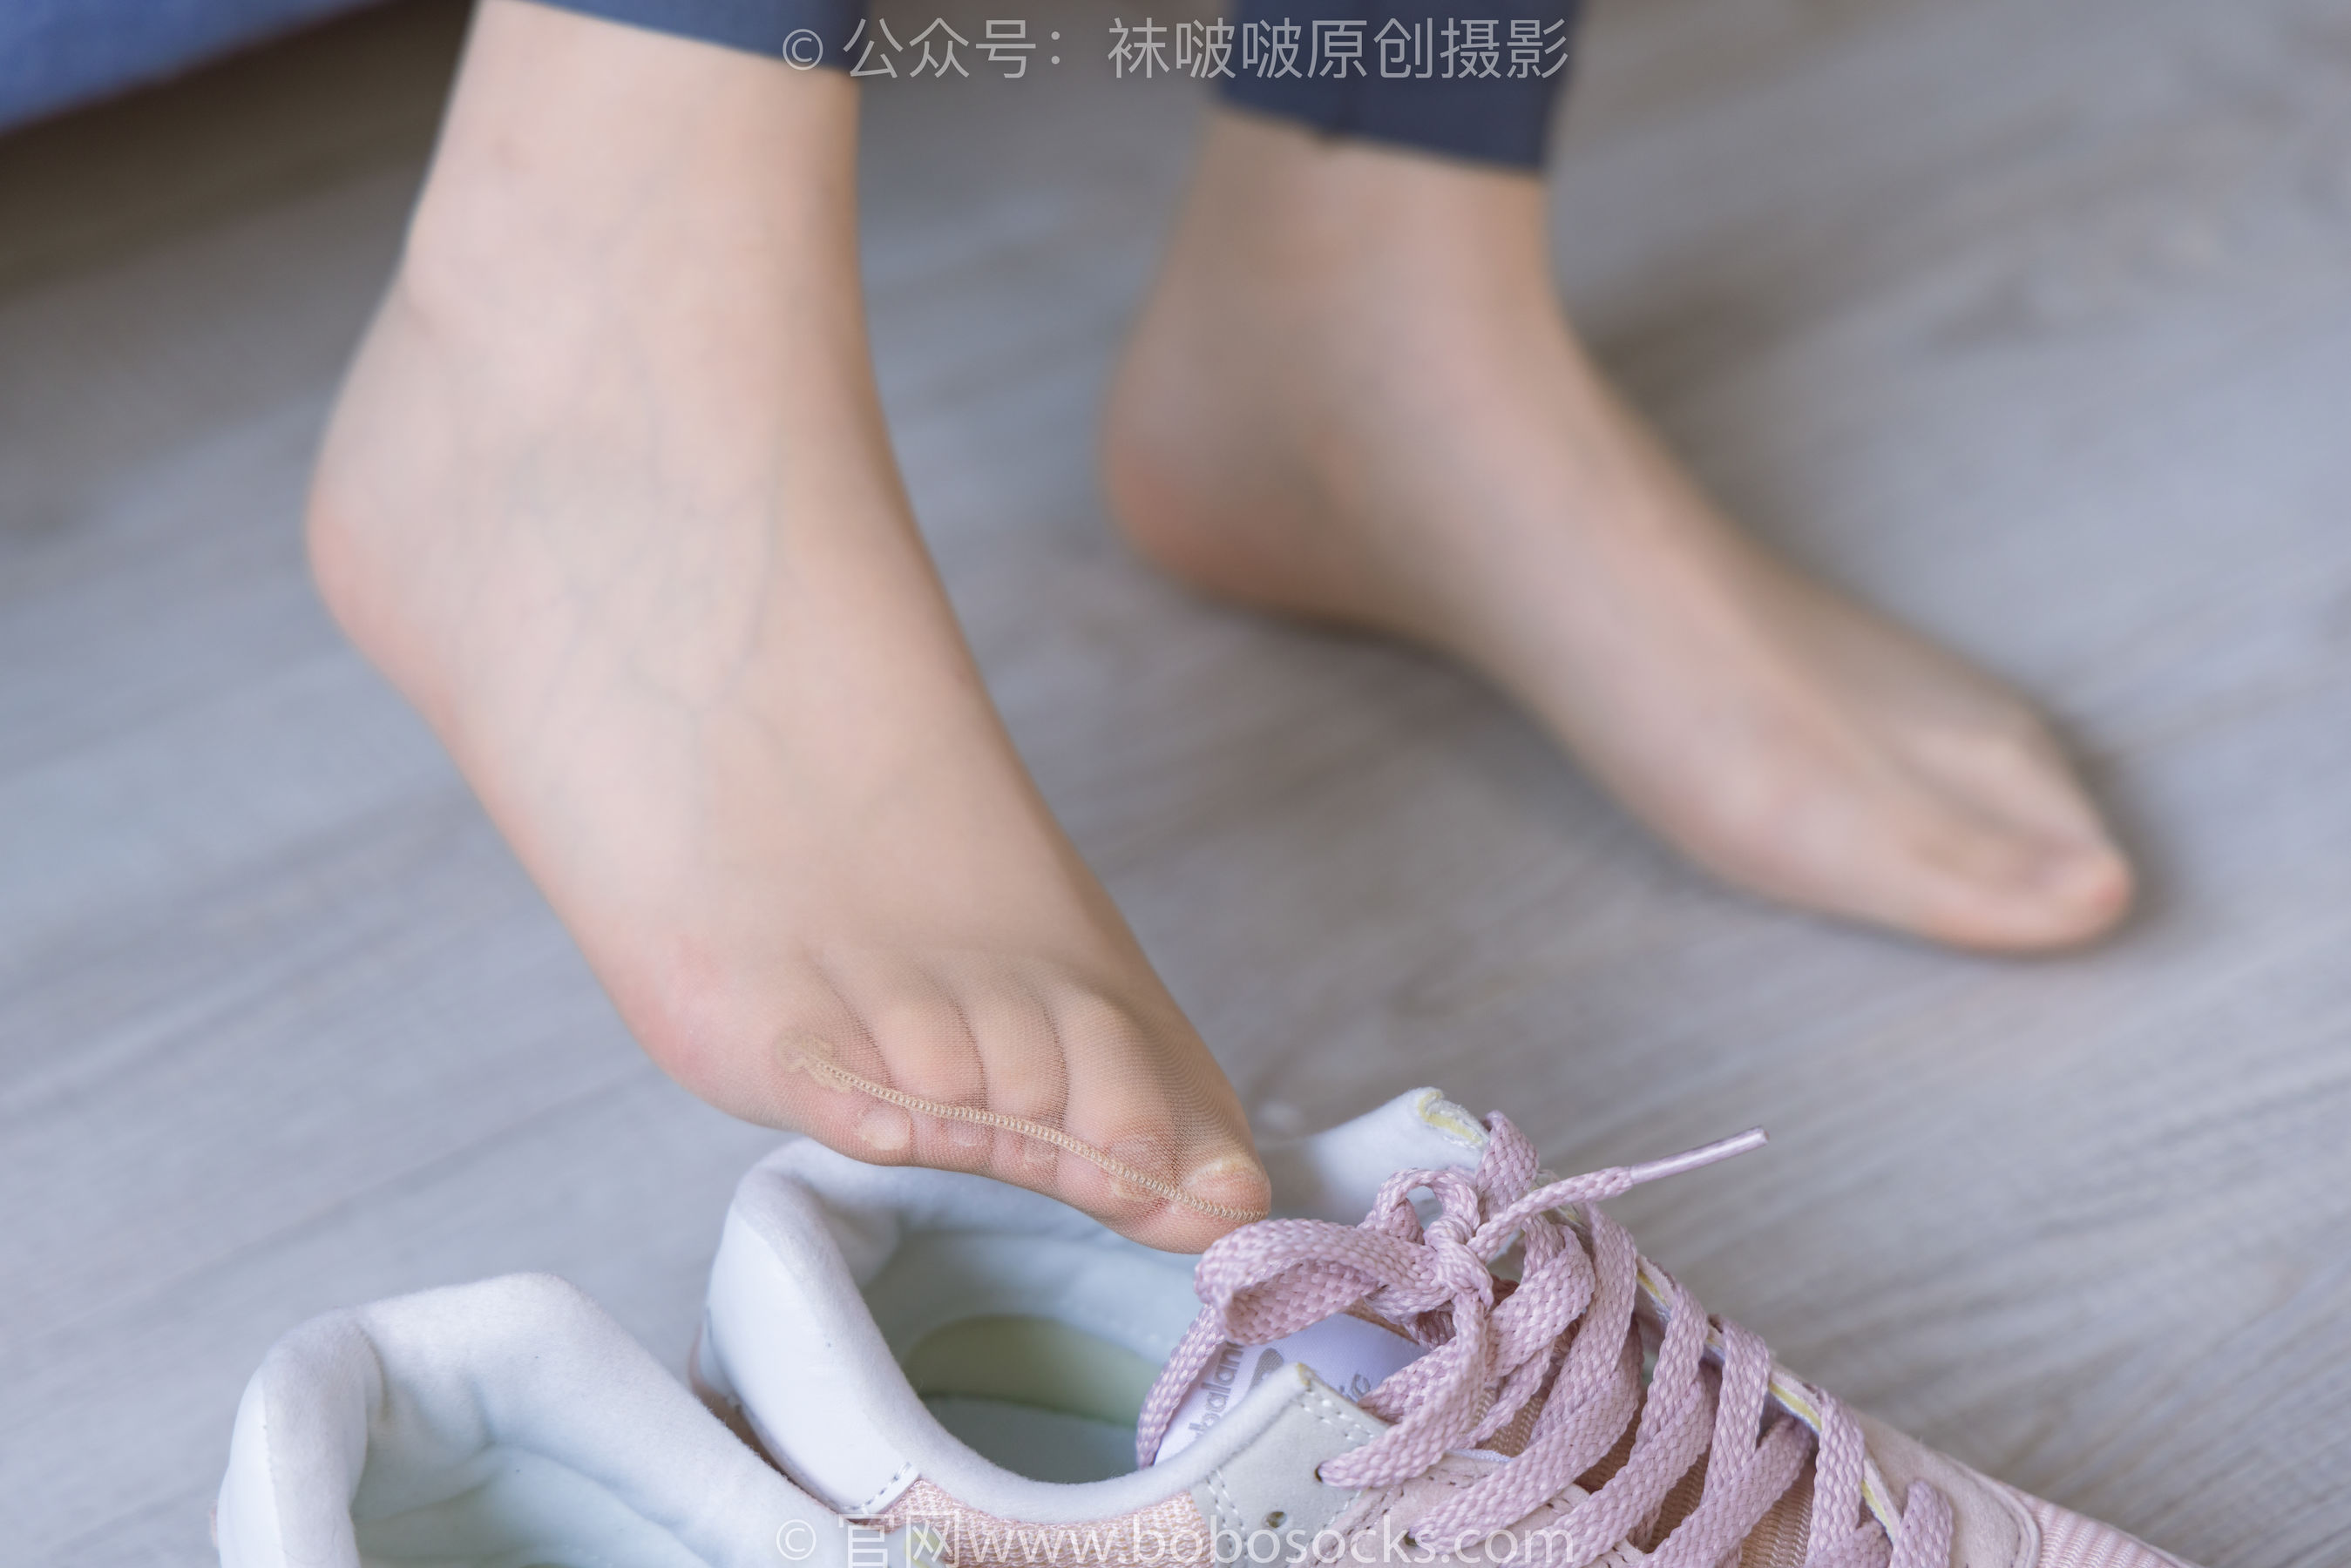 BoBoSocks袜啵啵 No.212 小甜豆 -运动鞋、肉丝、瑜伽裤裤里丝/(140P)